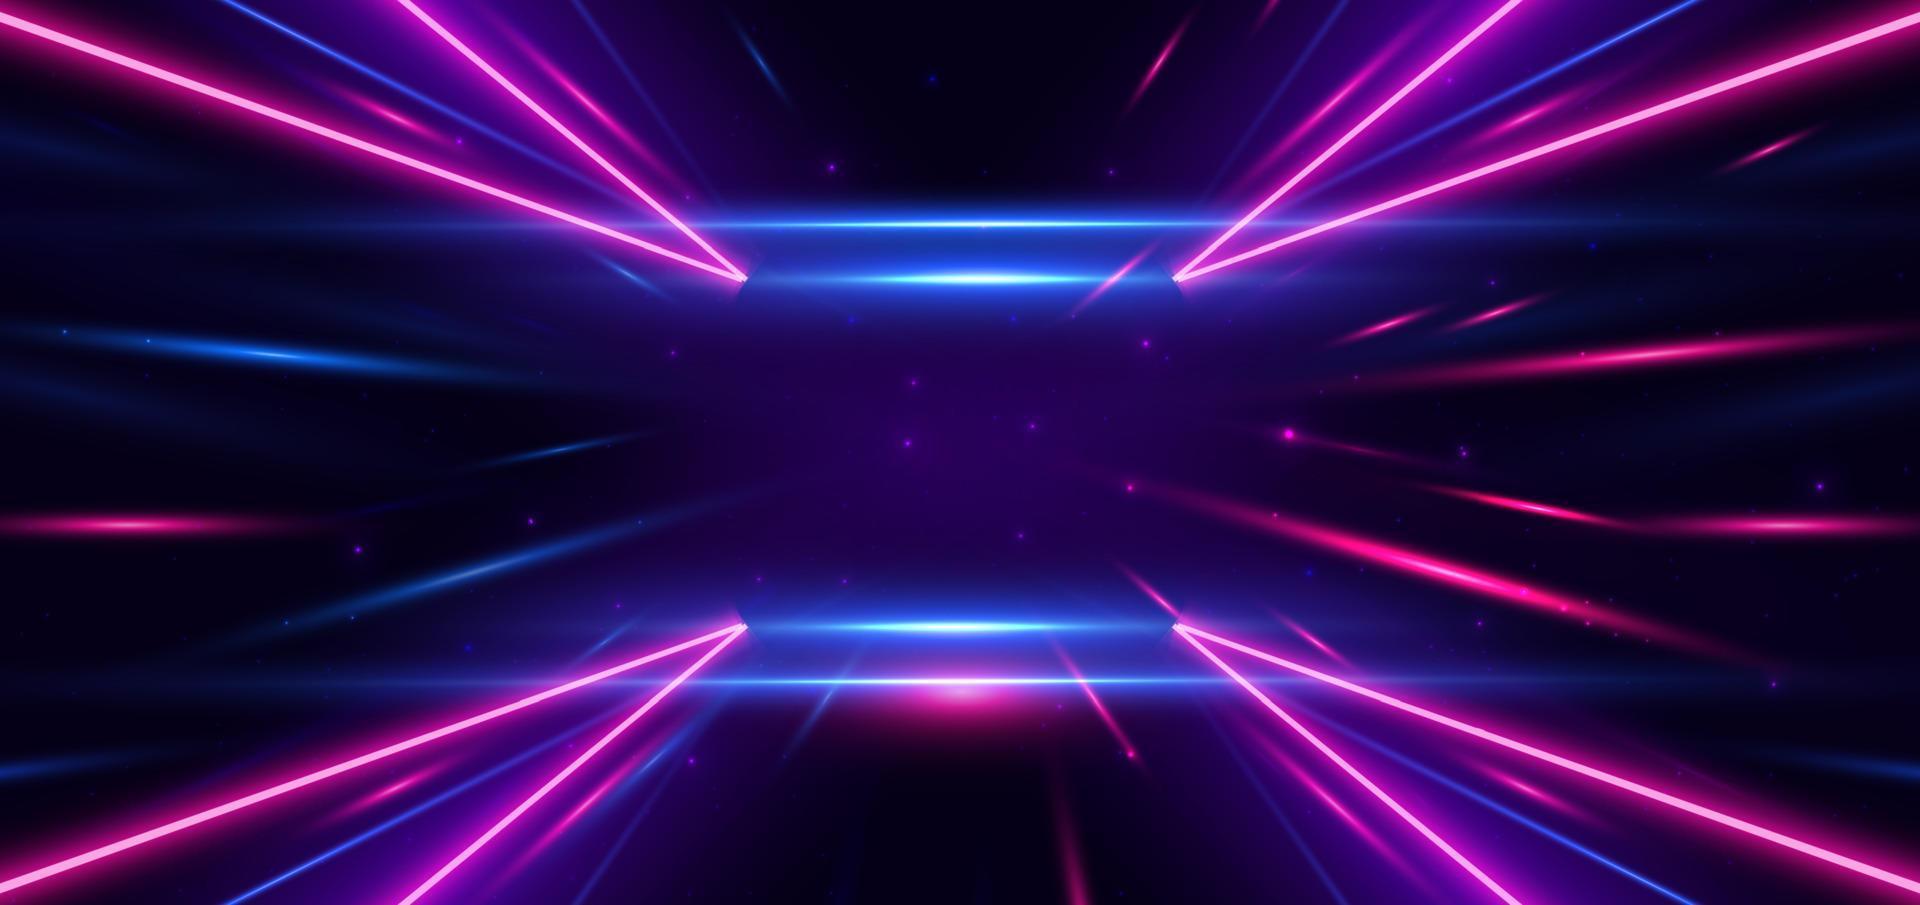 technologie abstraite triangle néon futuriste brillant lignes lumineuses bleues et roses avec effet de flou de mouvement de vitesse sur fond bleu foncé. vecteur